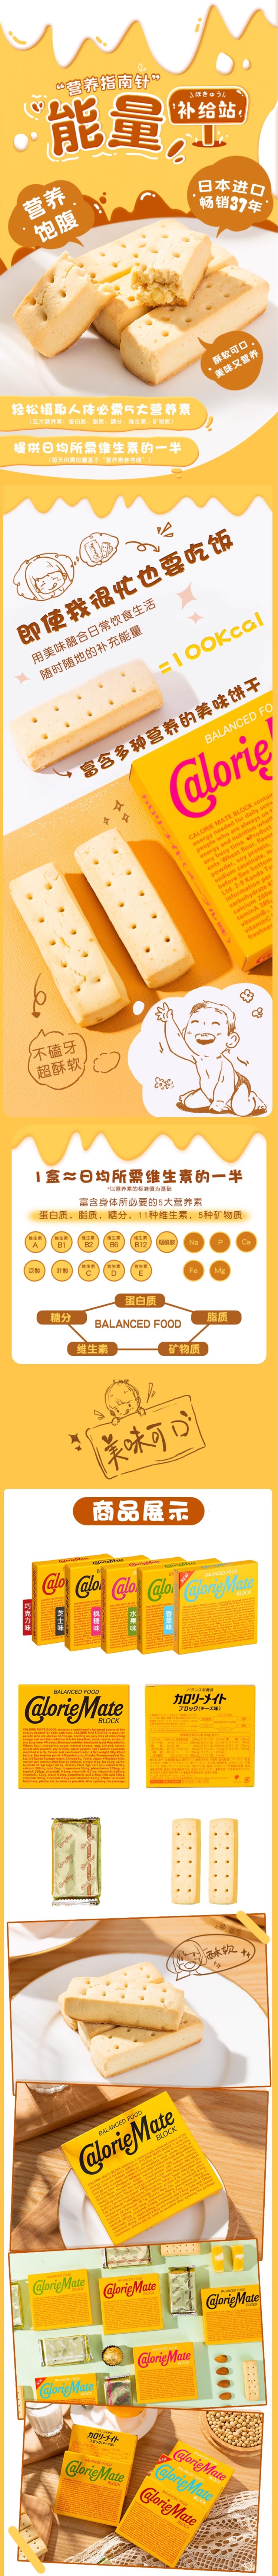 【日本直邮】欧阳娜娜推荐 OTSUKA大塚 卡路里控制平衡能量饼 香草味(新口味) 80g